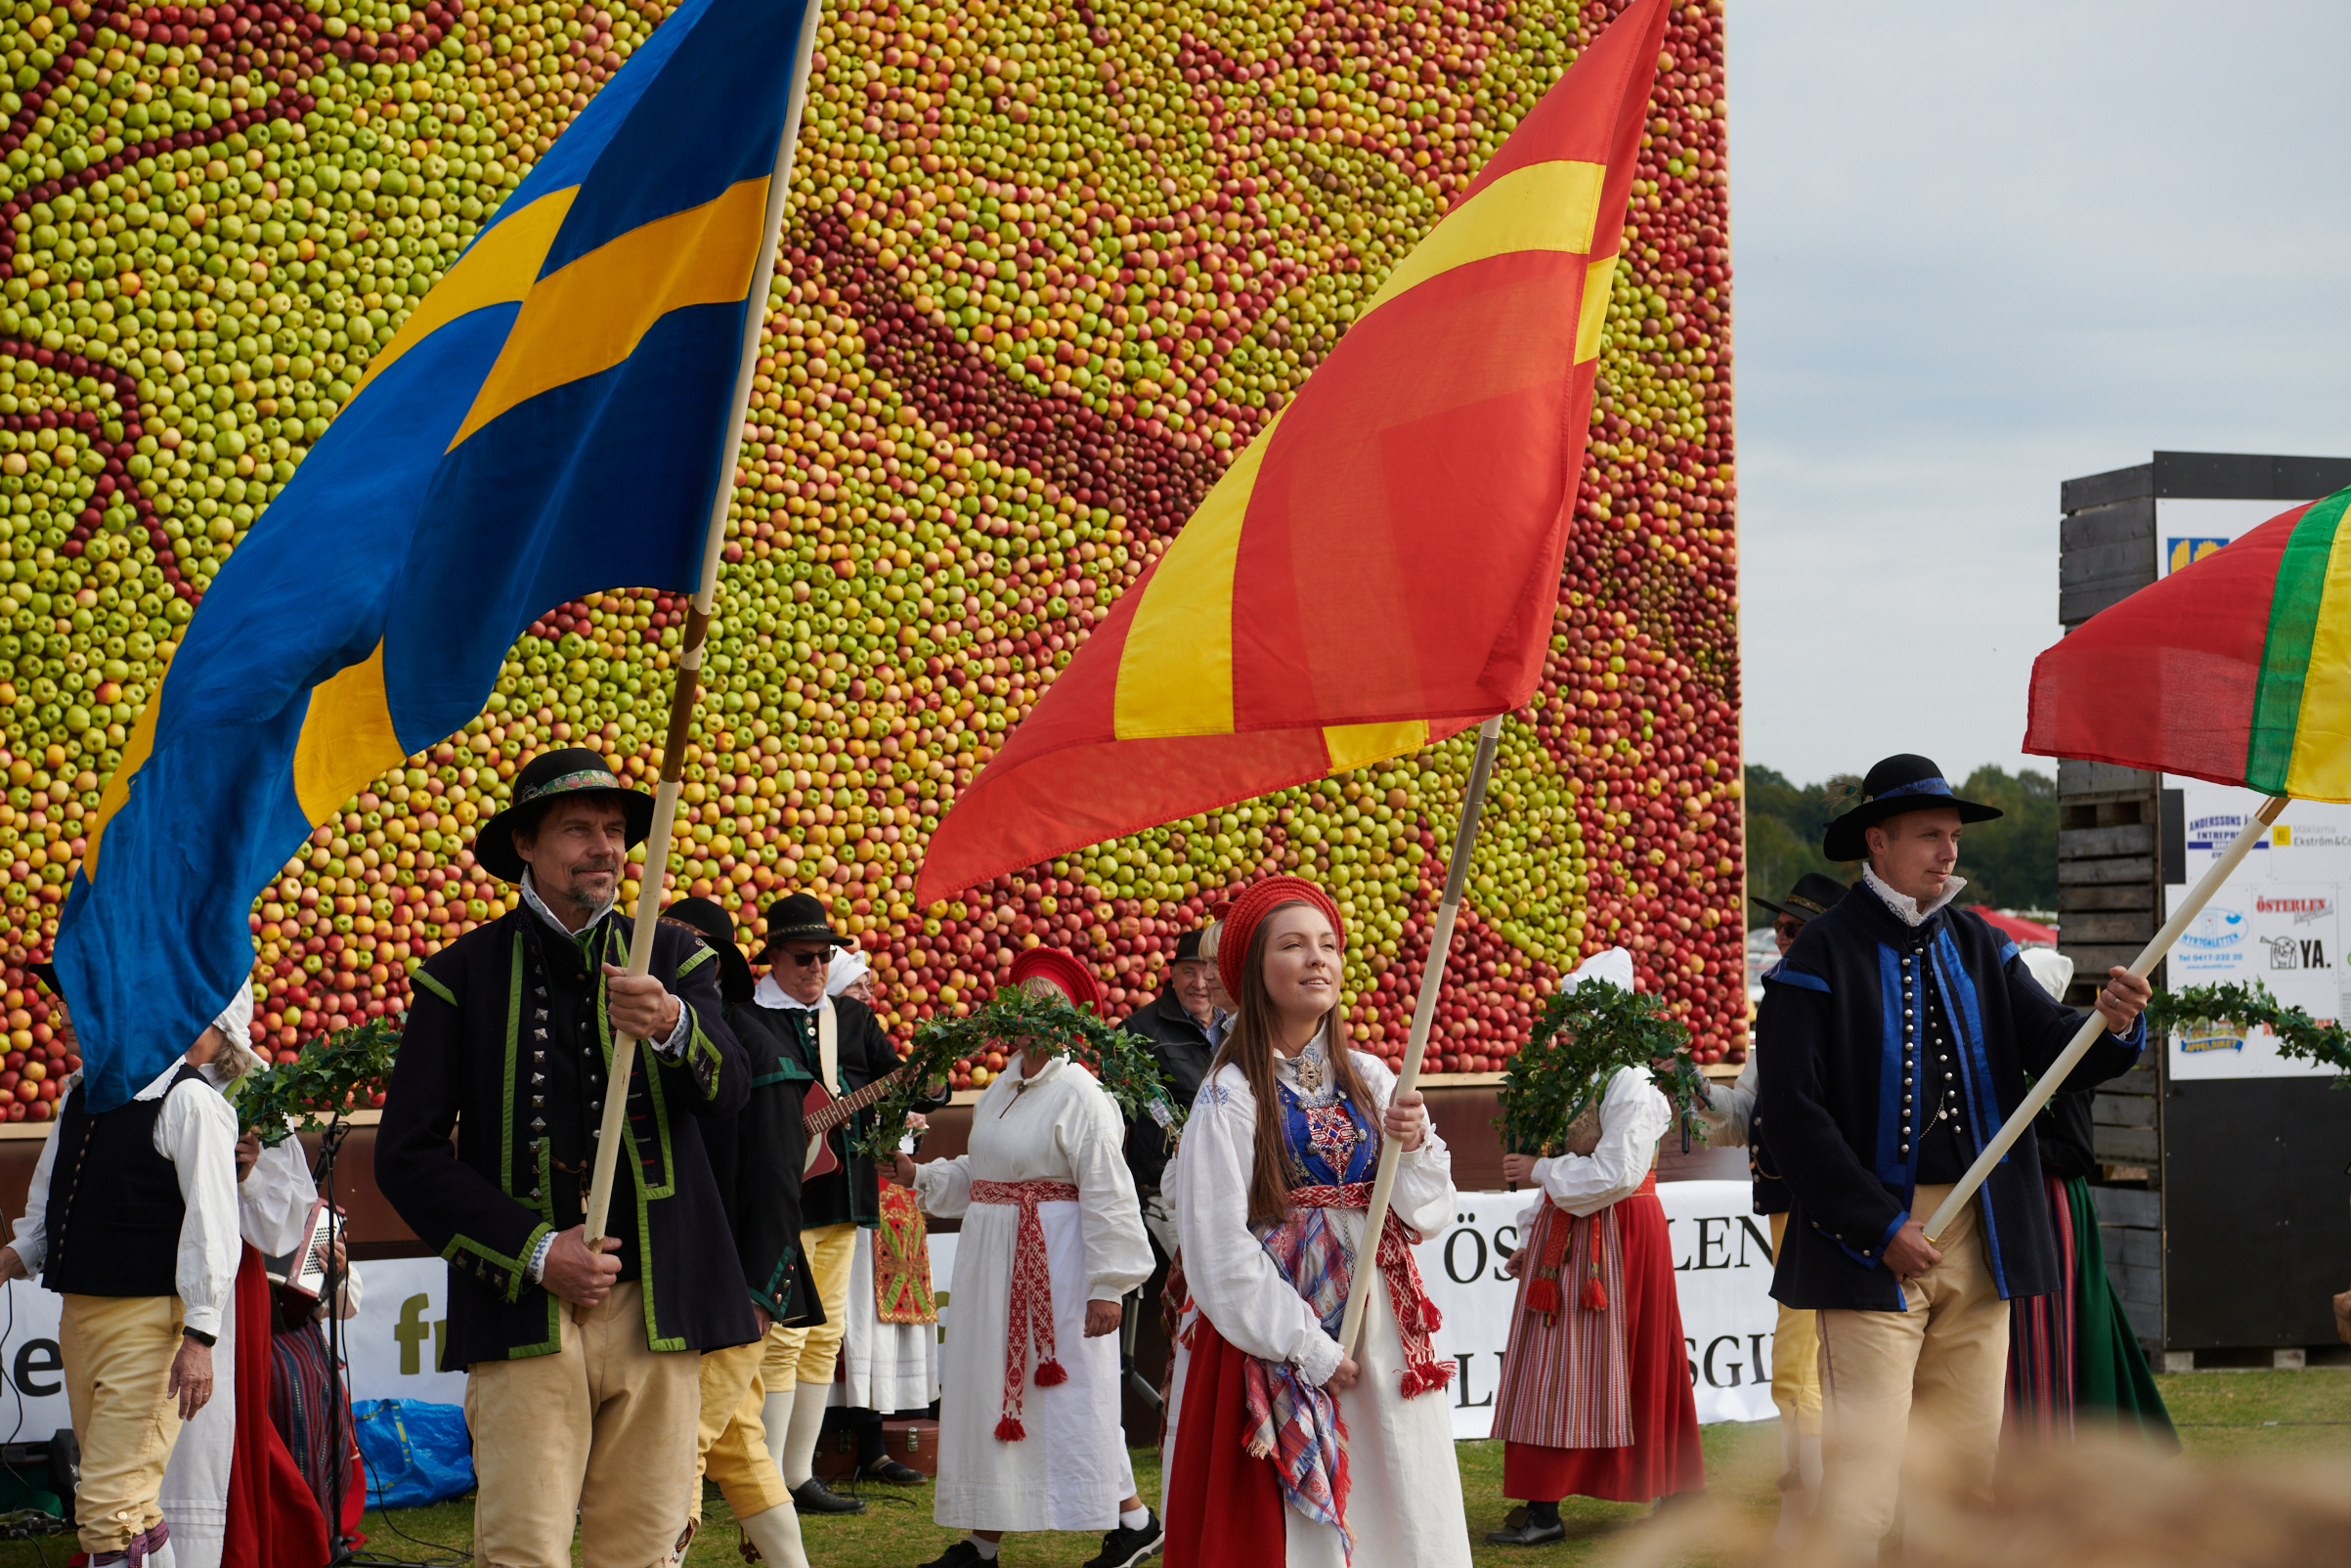 Folkdans och flaggor med äppeltavlan i bakgrunden